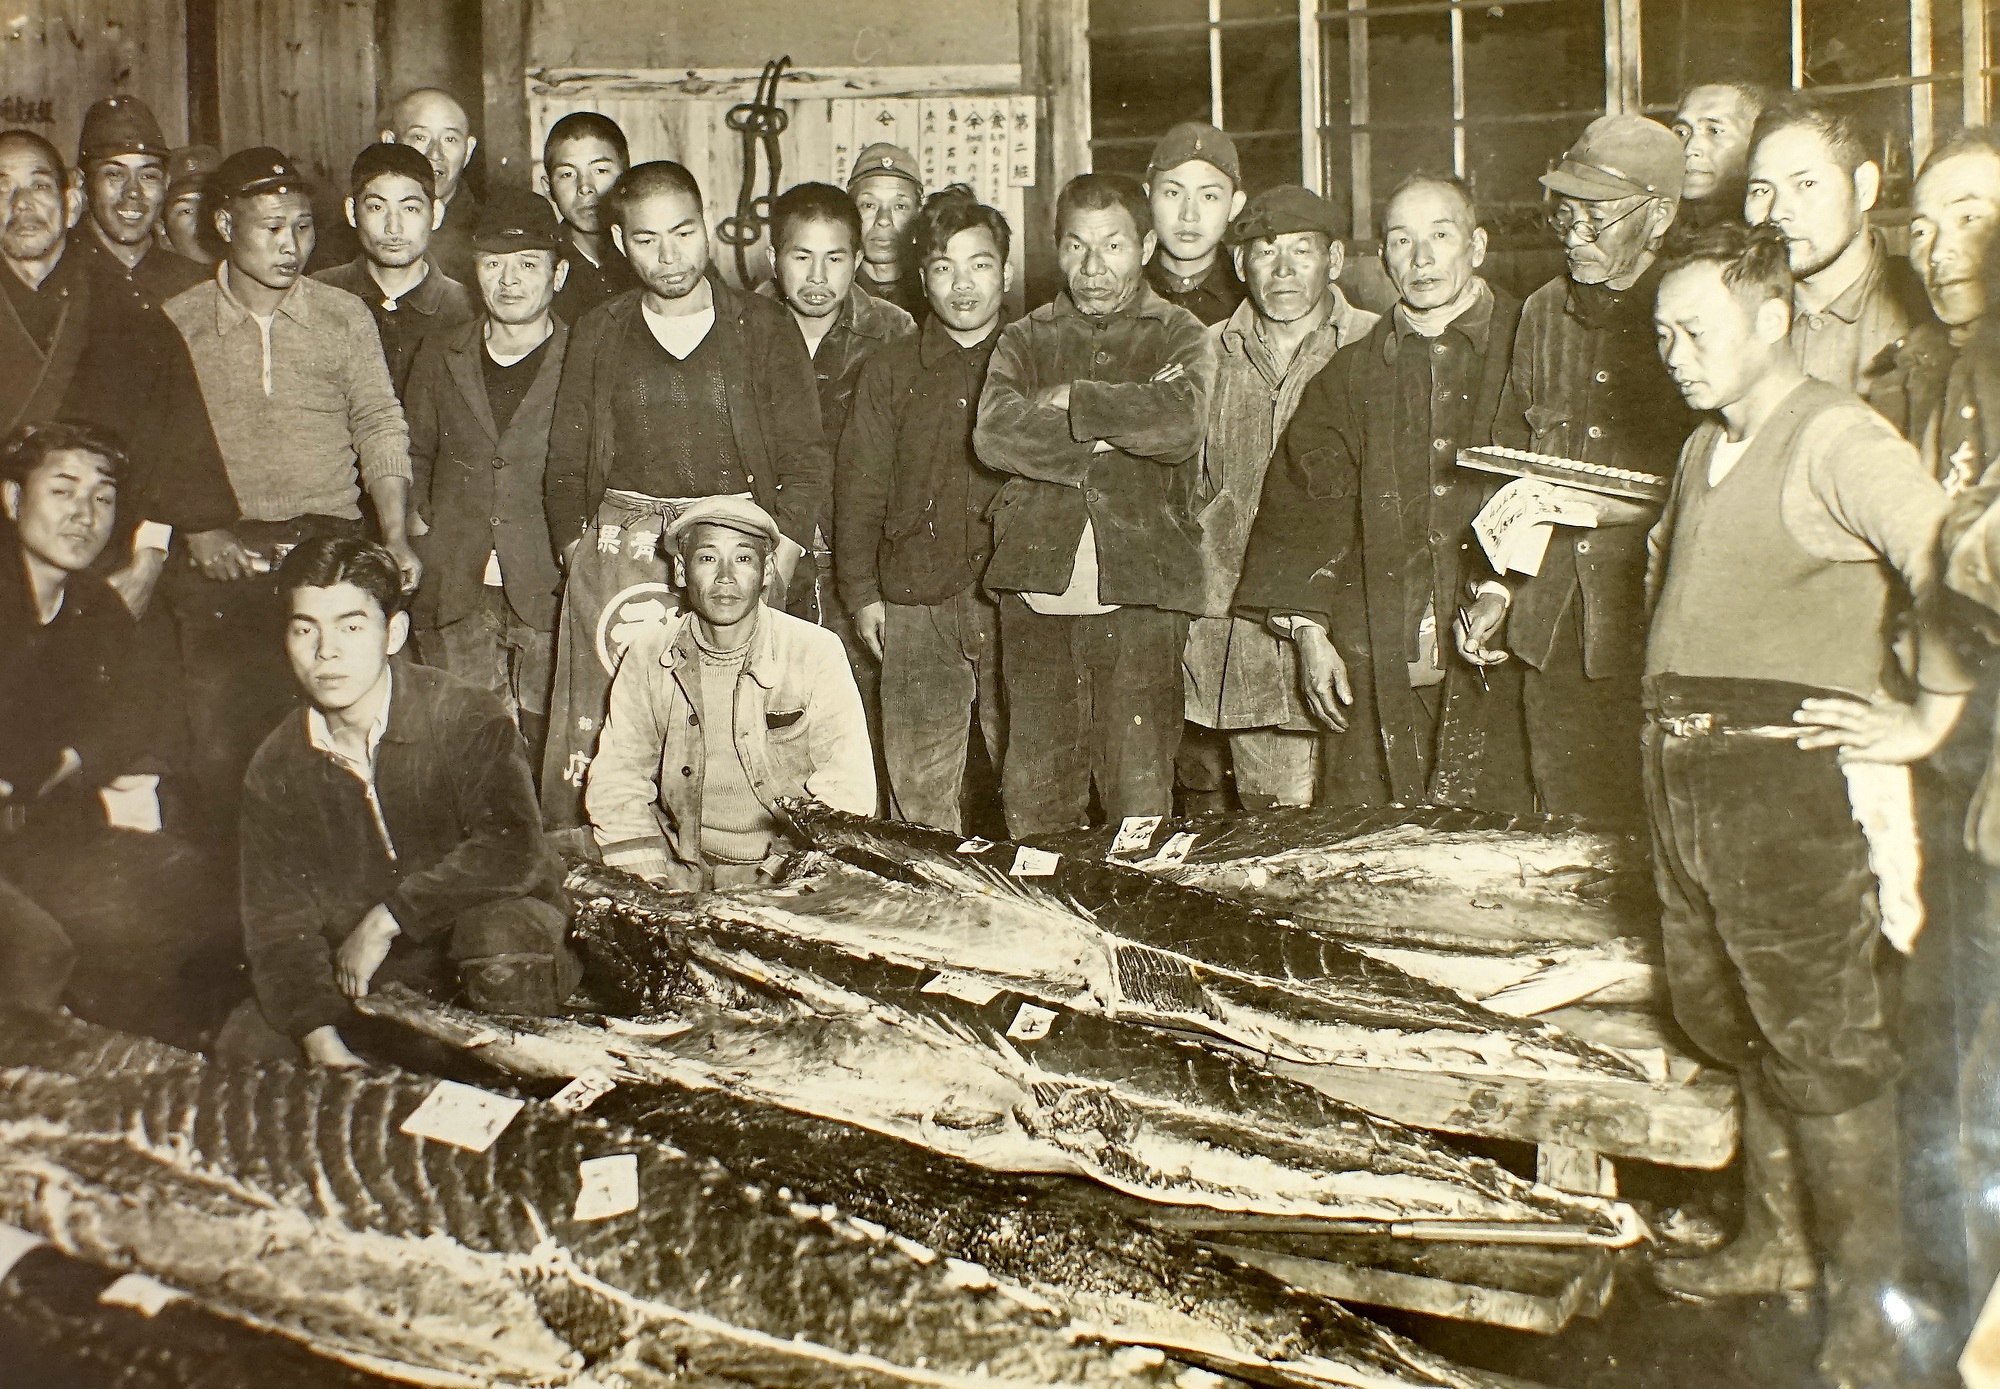 茨城探访割烹料理店,已有120年历史后人想来中国发展